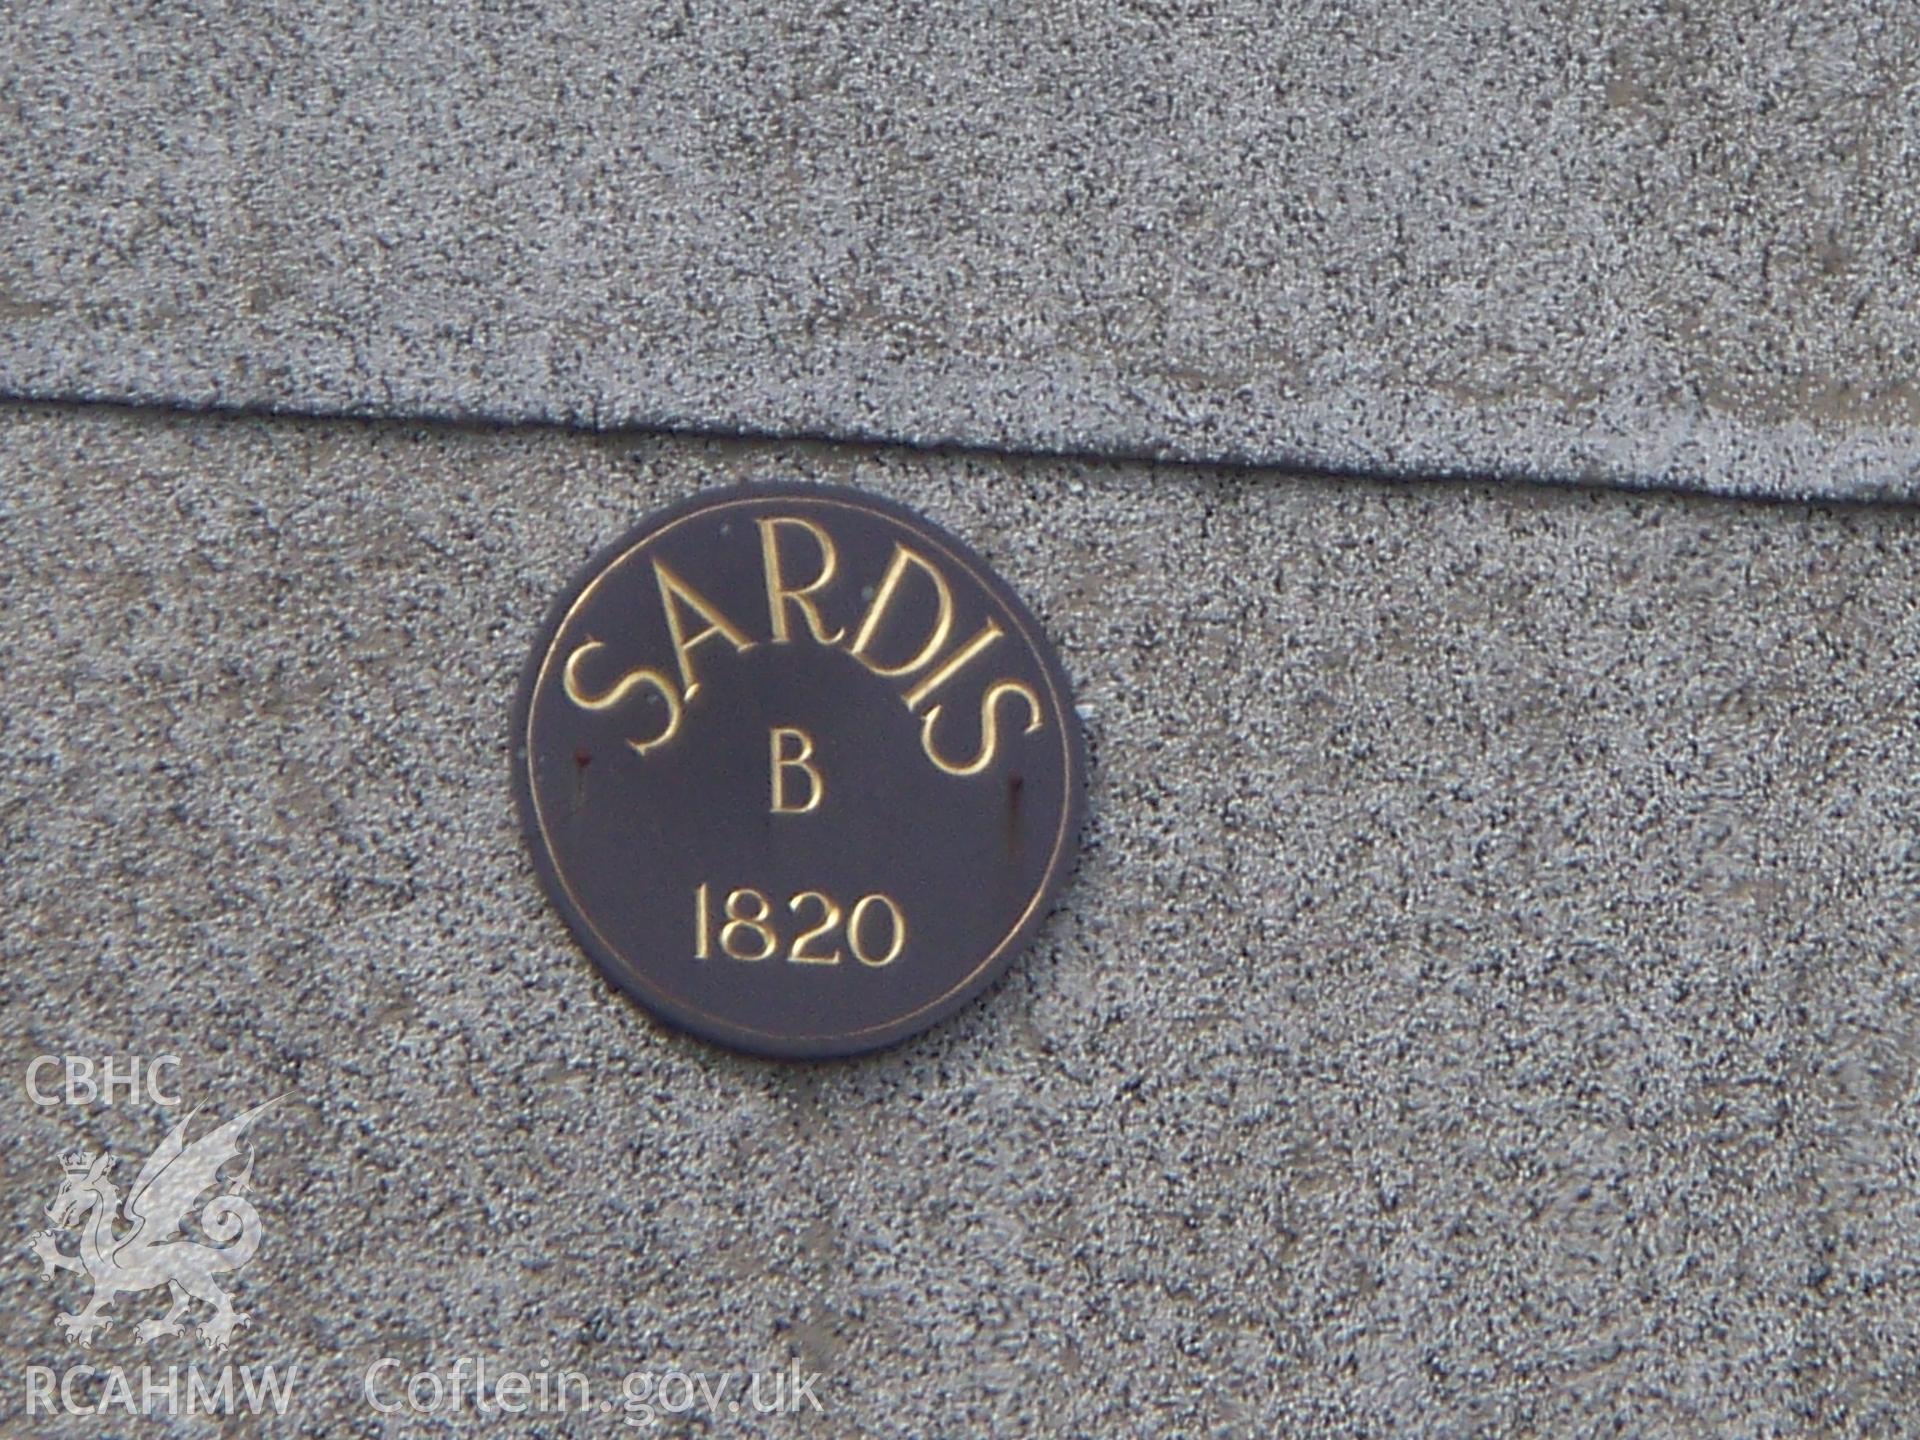 Date plaque 1820.